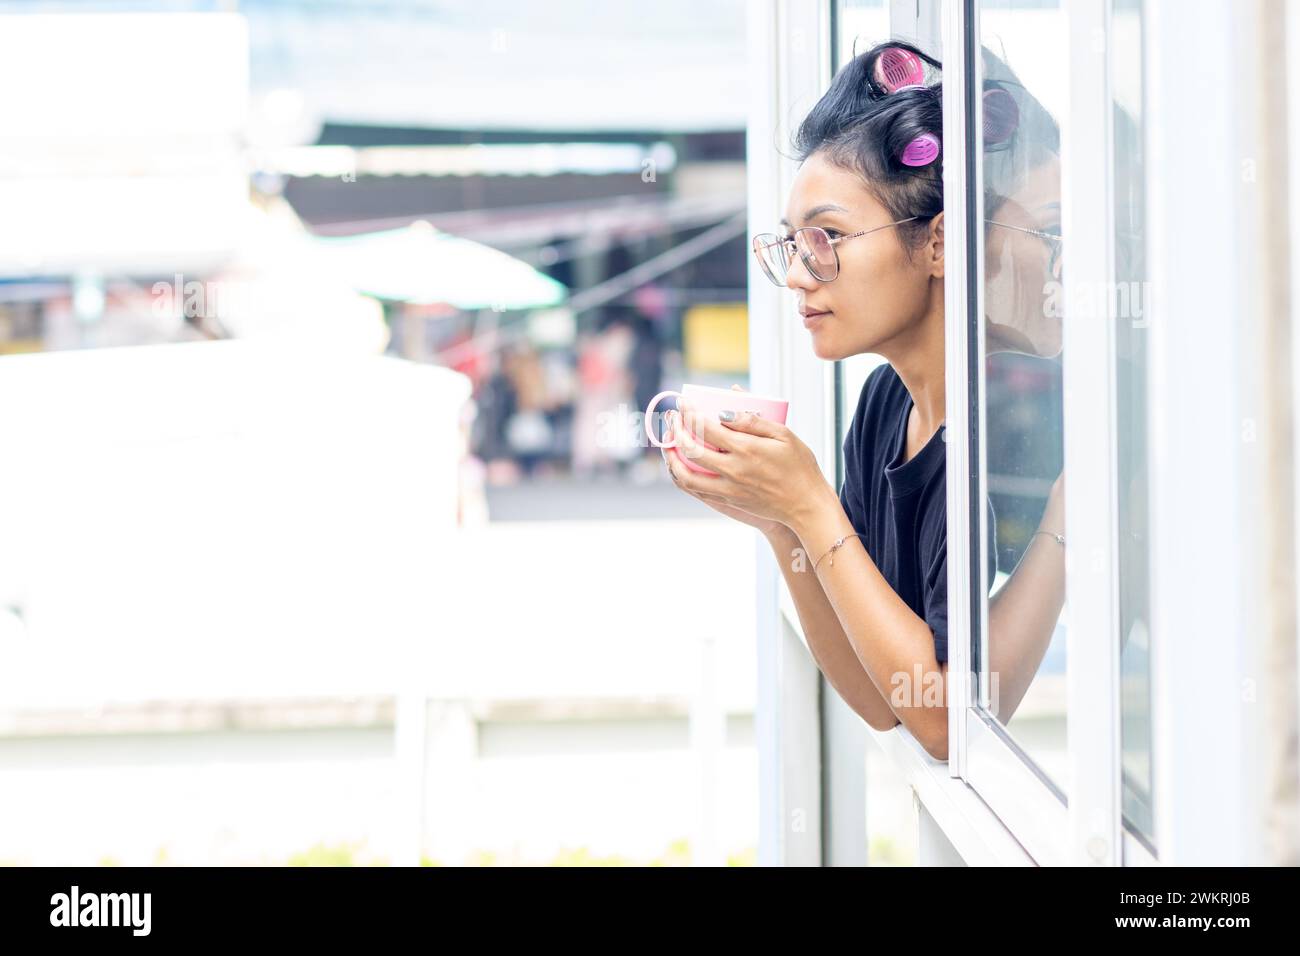 Une jeune femme tient une tasse dans une fenêtre ouverte d'un immeuble Banque D'Images